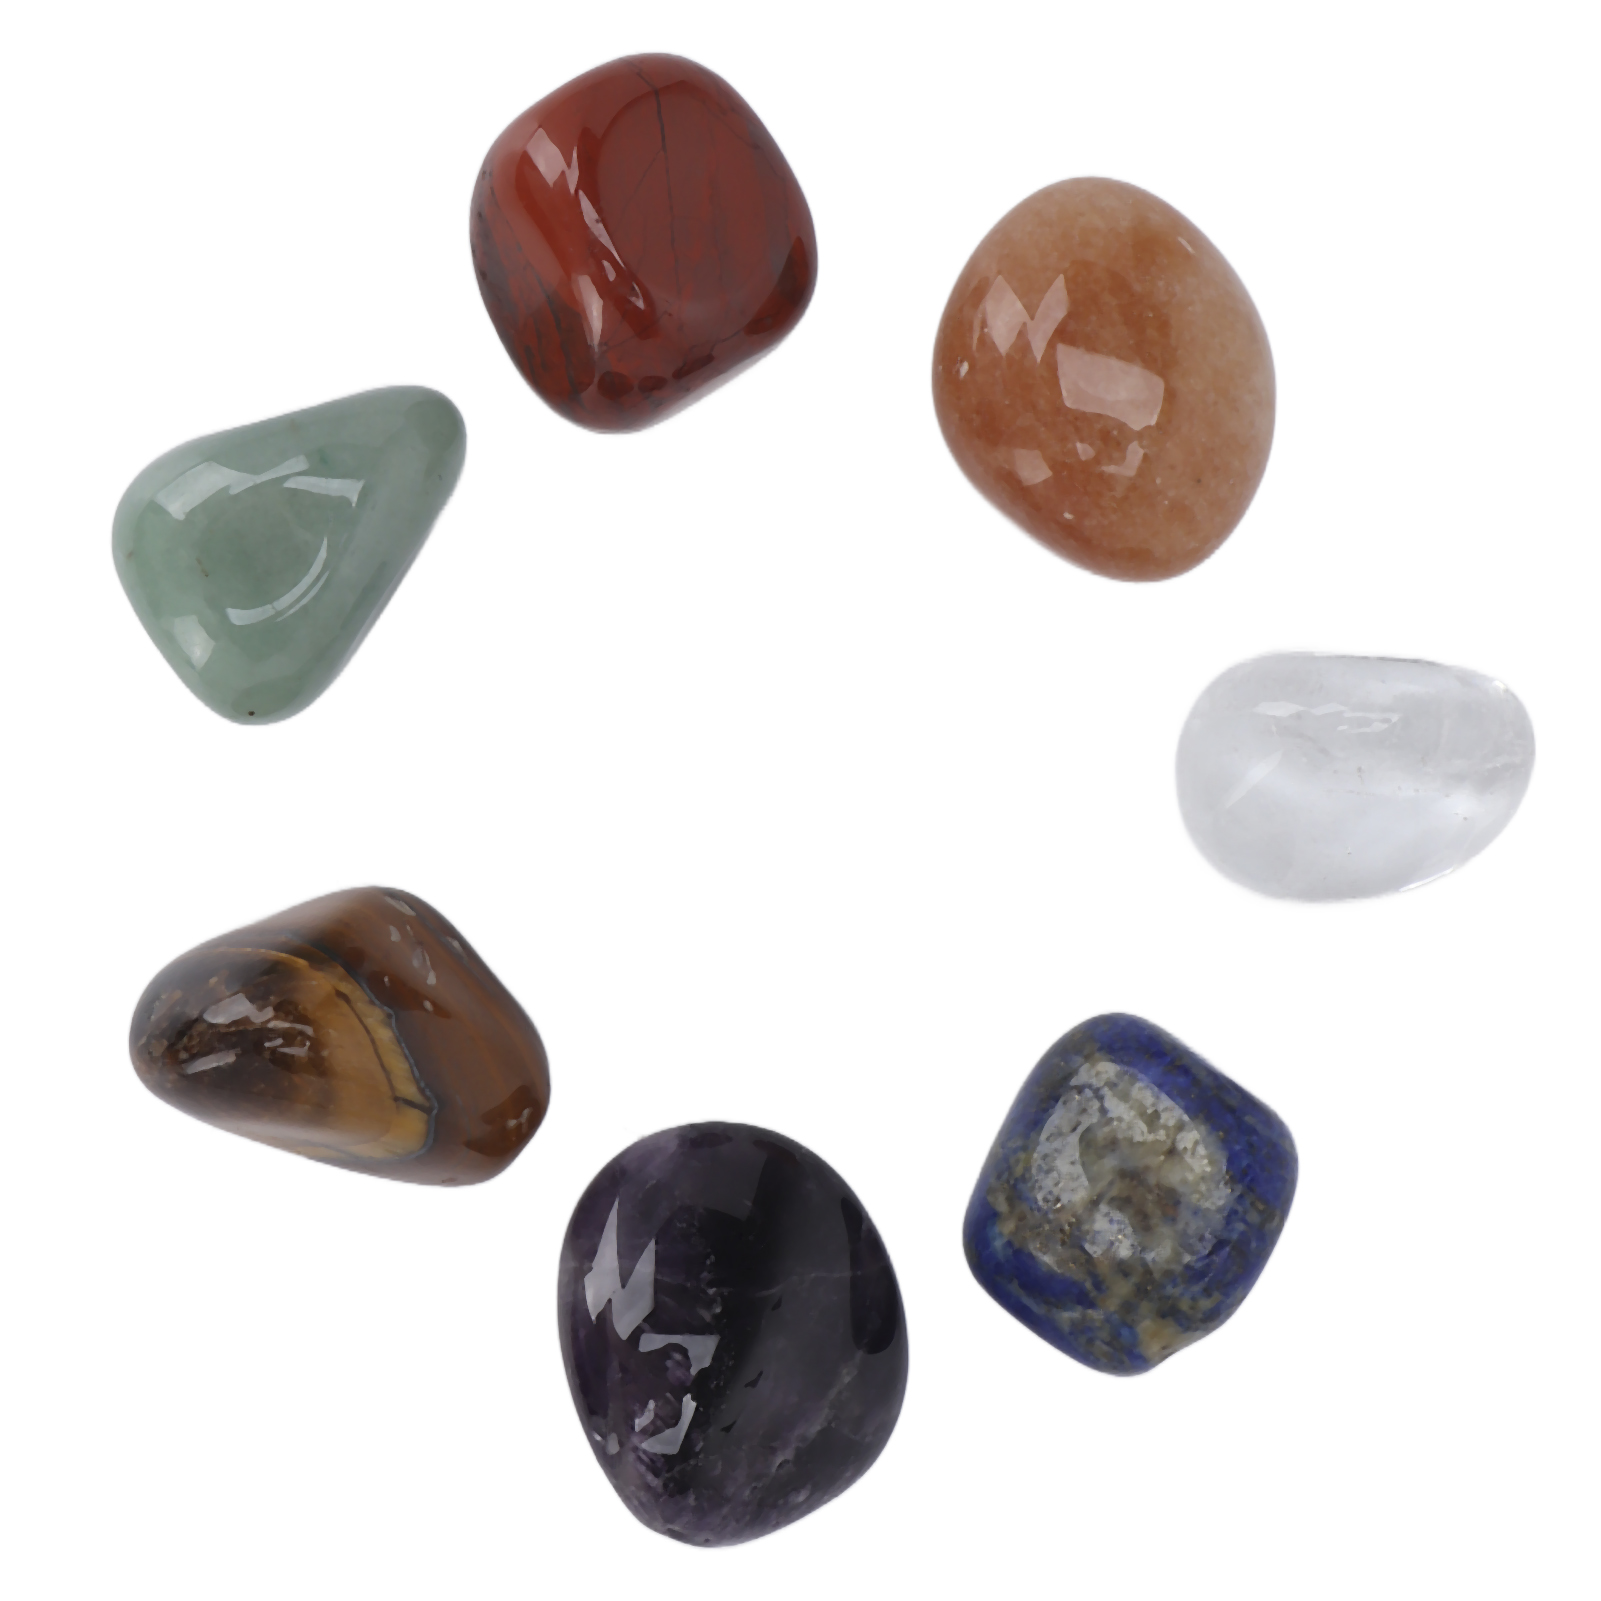 Как выбрать натуральный камень для отделки